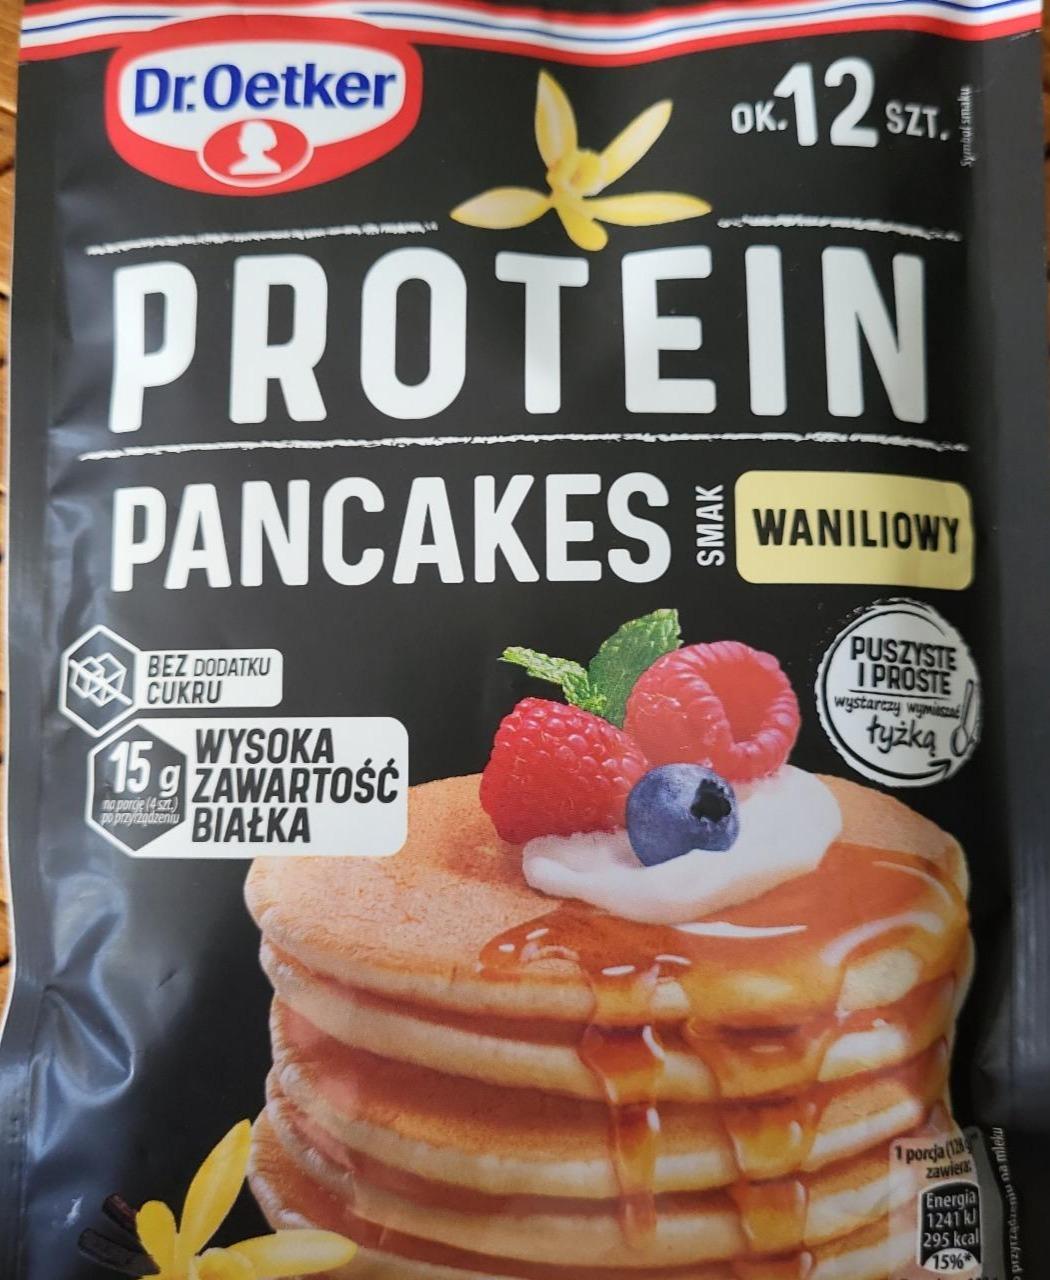 Zdjęcia - Protein pancakes smak waniliowy Dr.Oetker